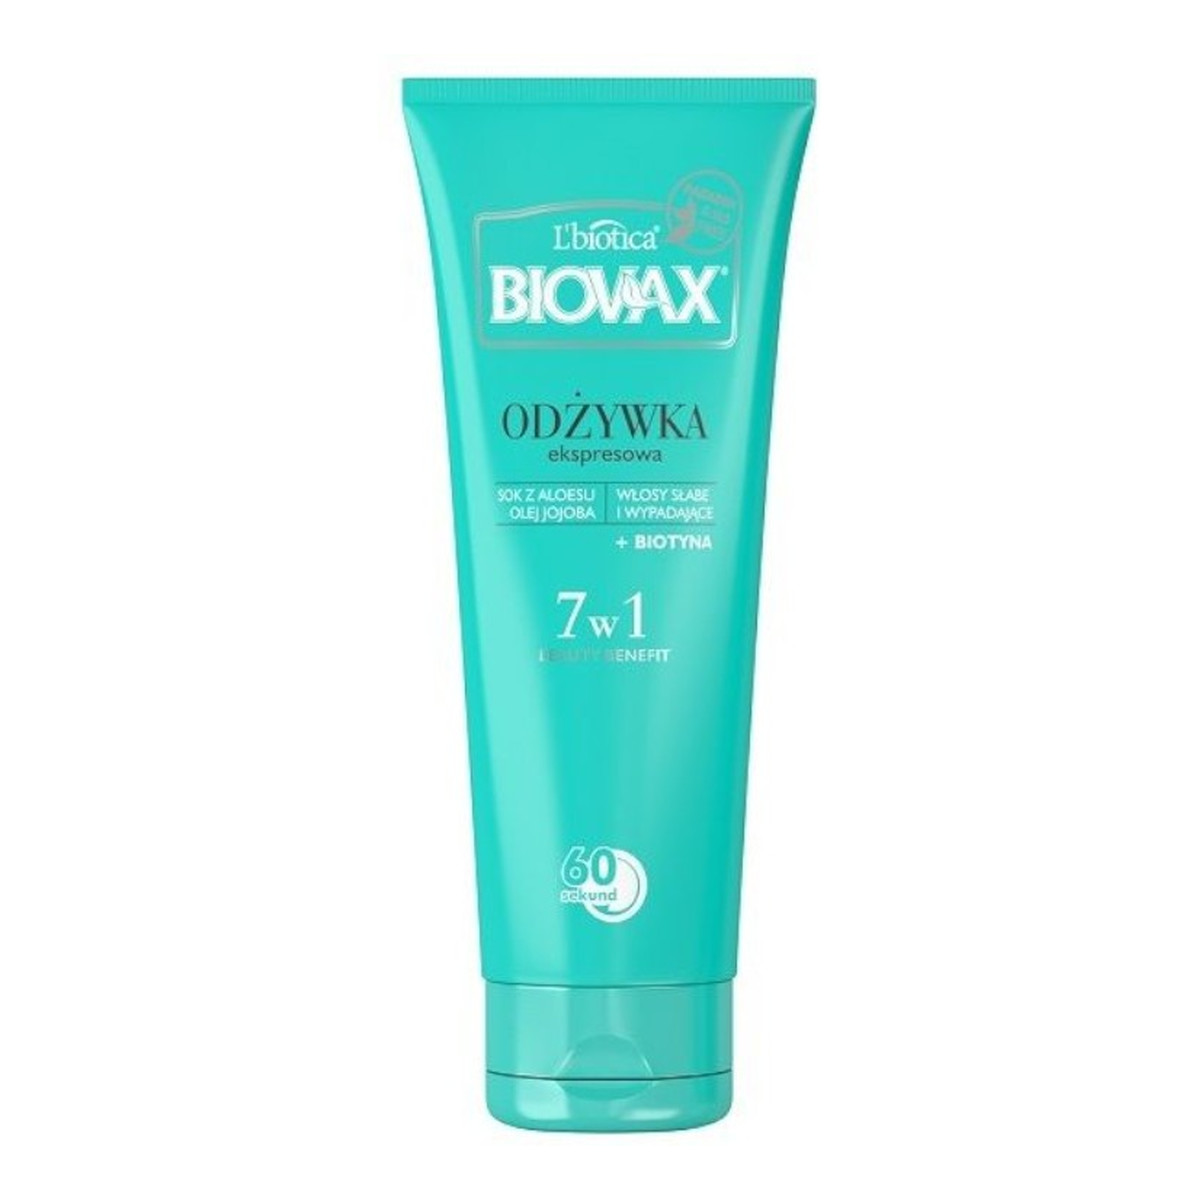 Biovax Odżywka ekspresowa 7w1 do włosów słabych i wypadających 200ml